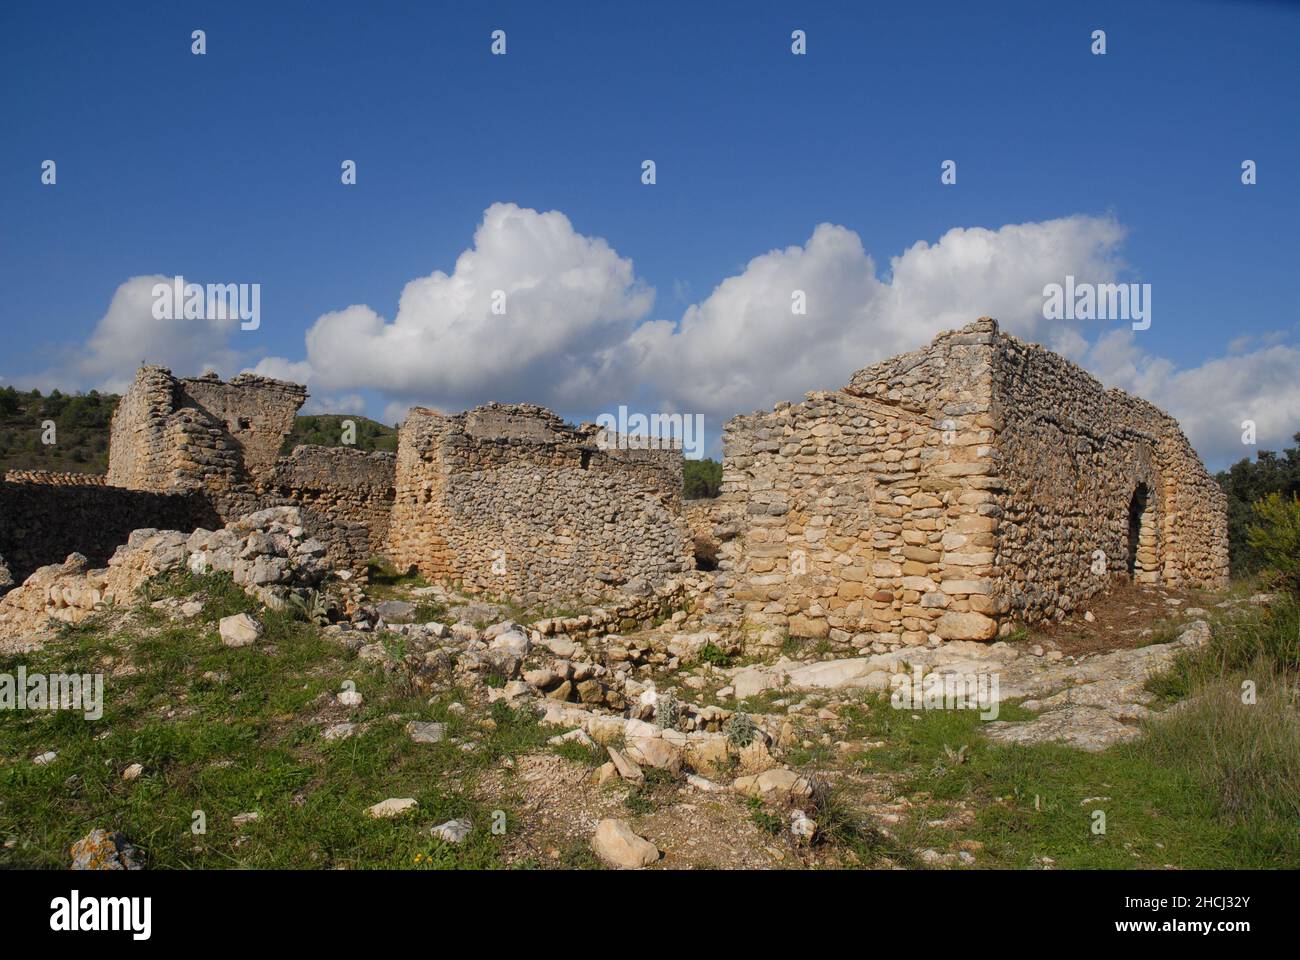 Abandoned Moorish village of L'Atzuvieta, near Alcala de La Jovada in the Vall d'Alcala, Alicante Province, Spain Stock Photo